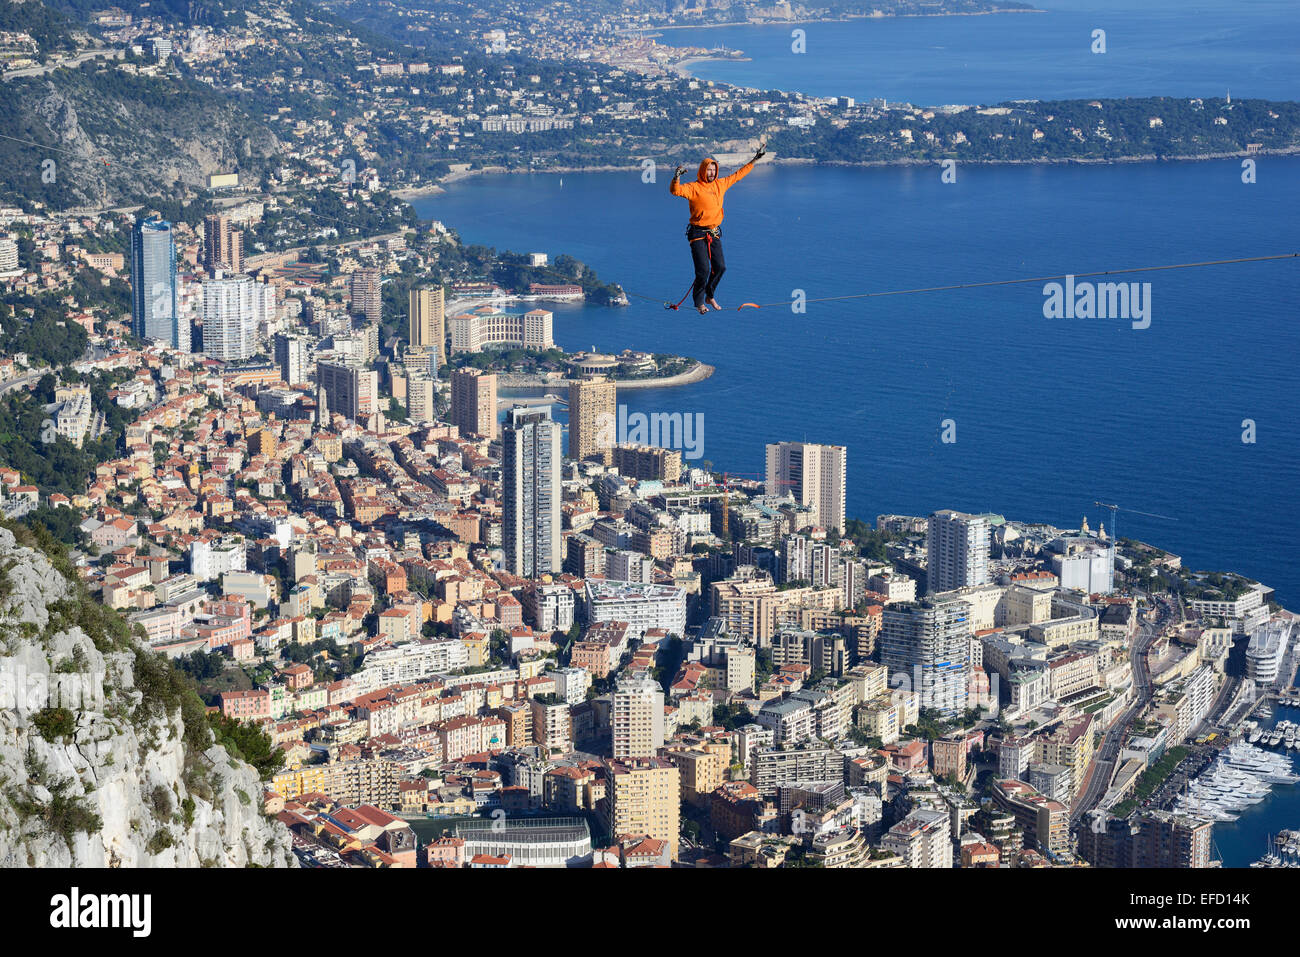 Jeune homme à une altitude de 550 mètres au-dessus du niveau de la mer.Principauté de Monaco au loin.La Turbie, France. Banque D'Images